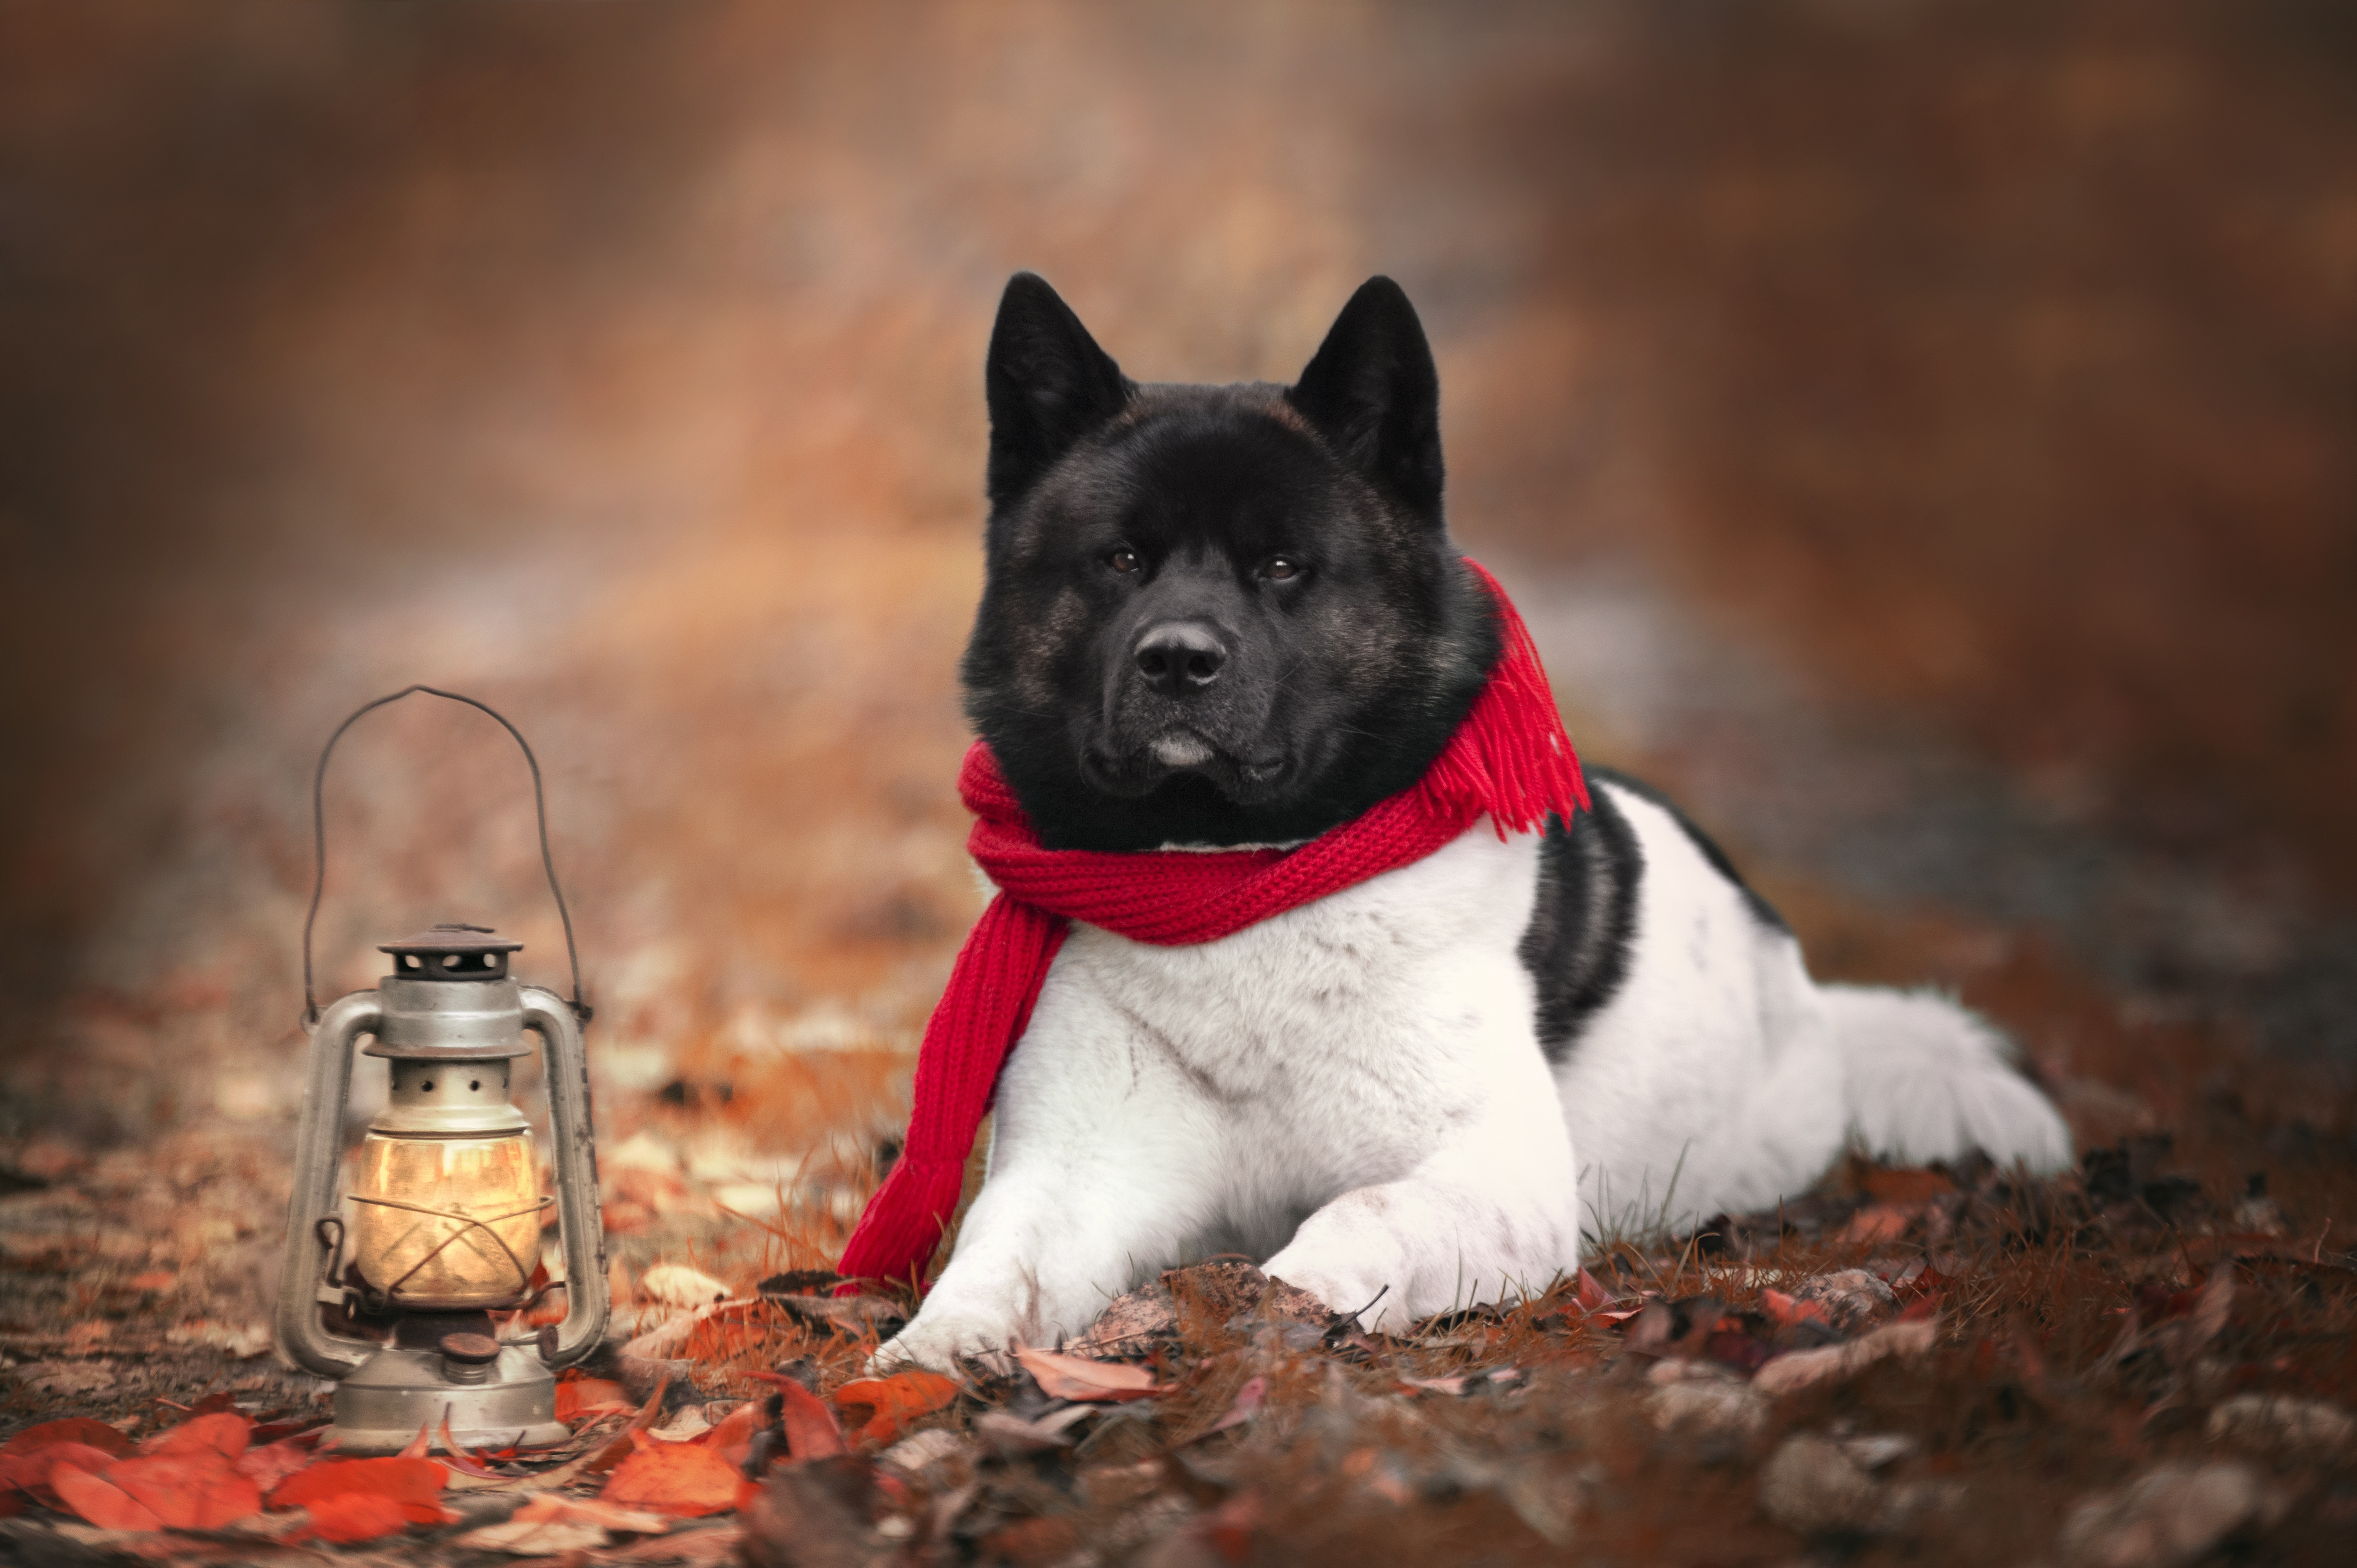 Free download wallpaper Dogs, Dog, Lantern, Animal, Akita on your PC desktop